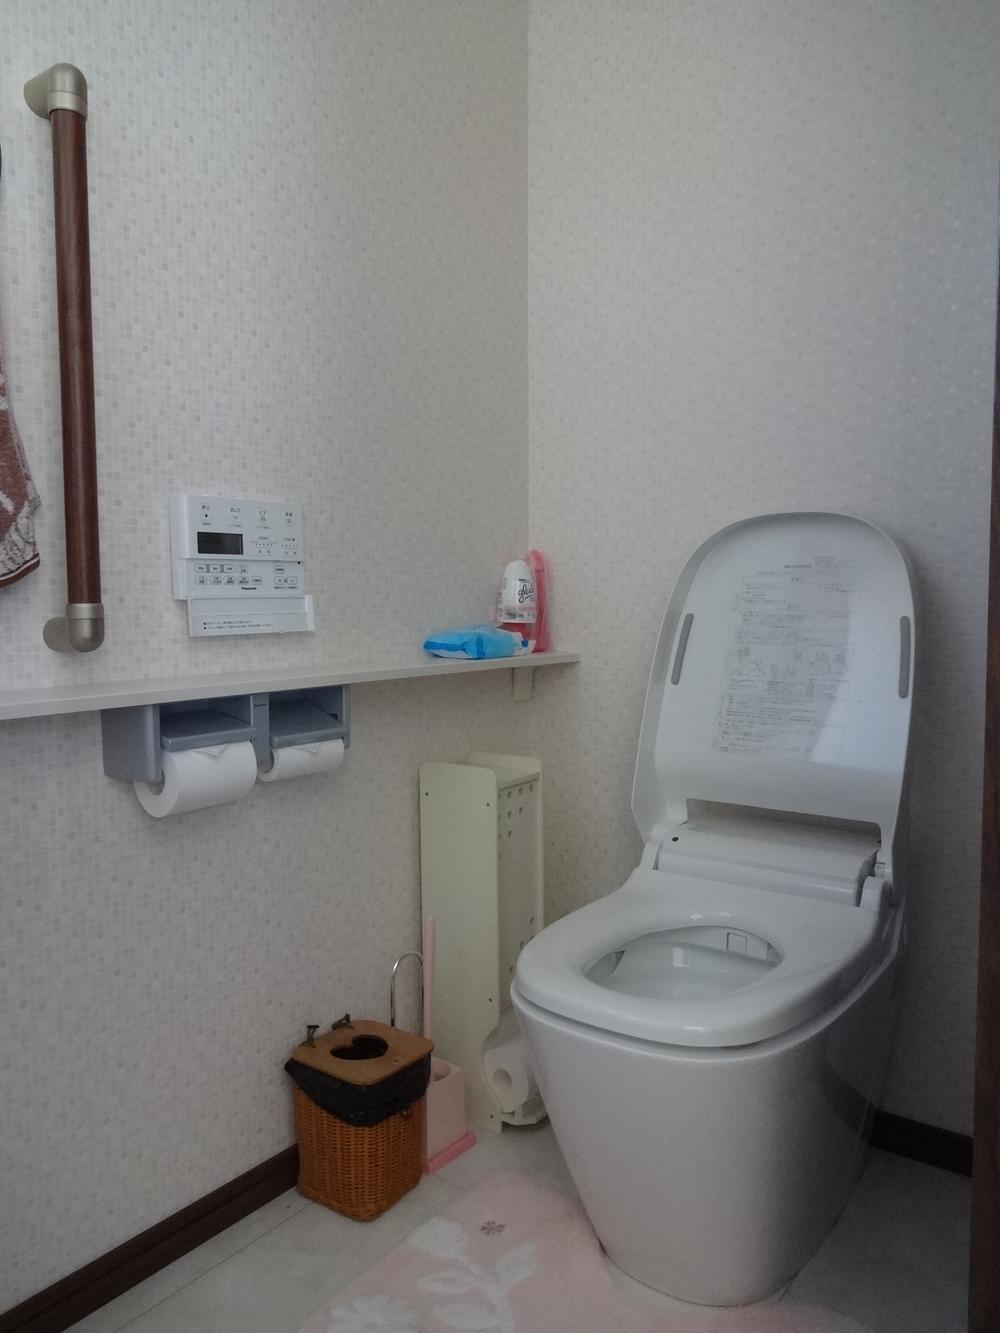 Toilet. 2 kaizen automatic attack same toilet Ara Uno (November 2013) Shooting